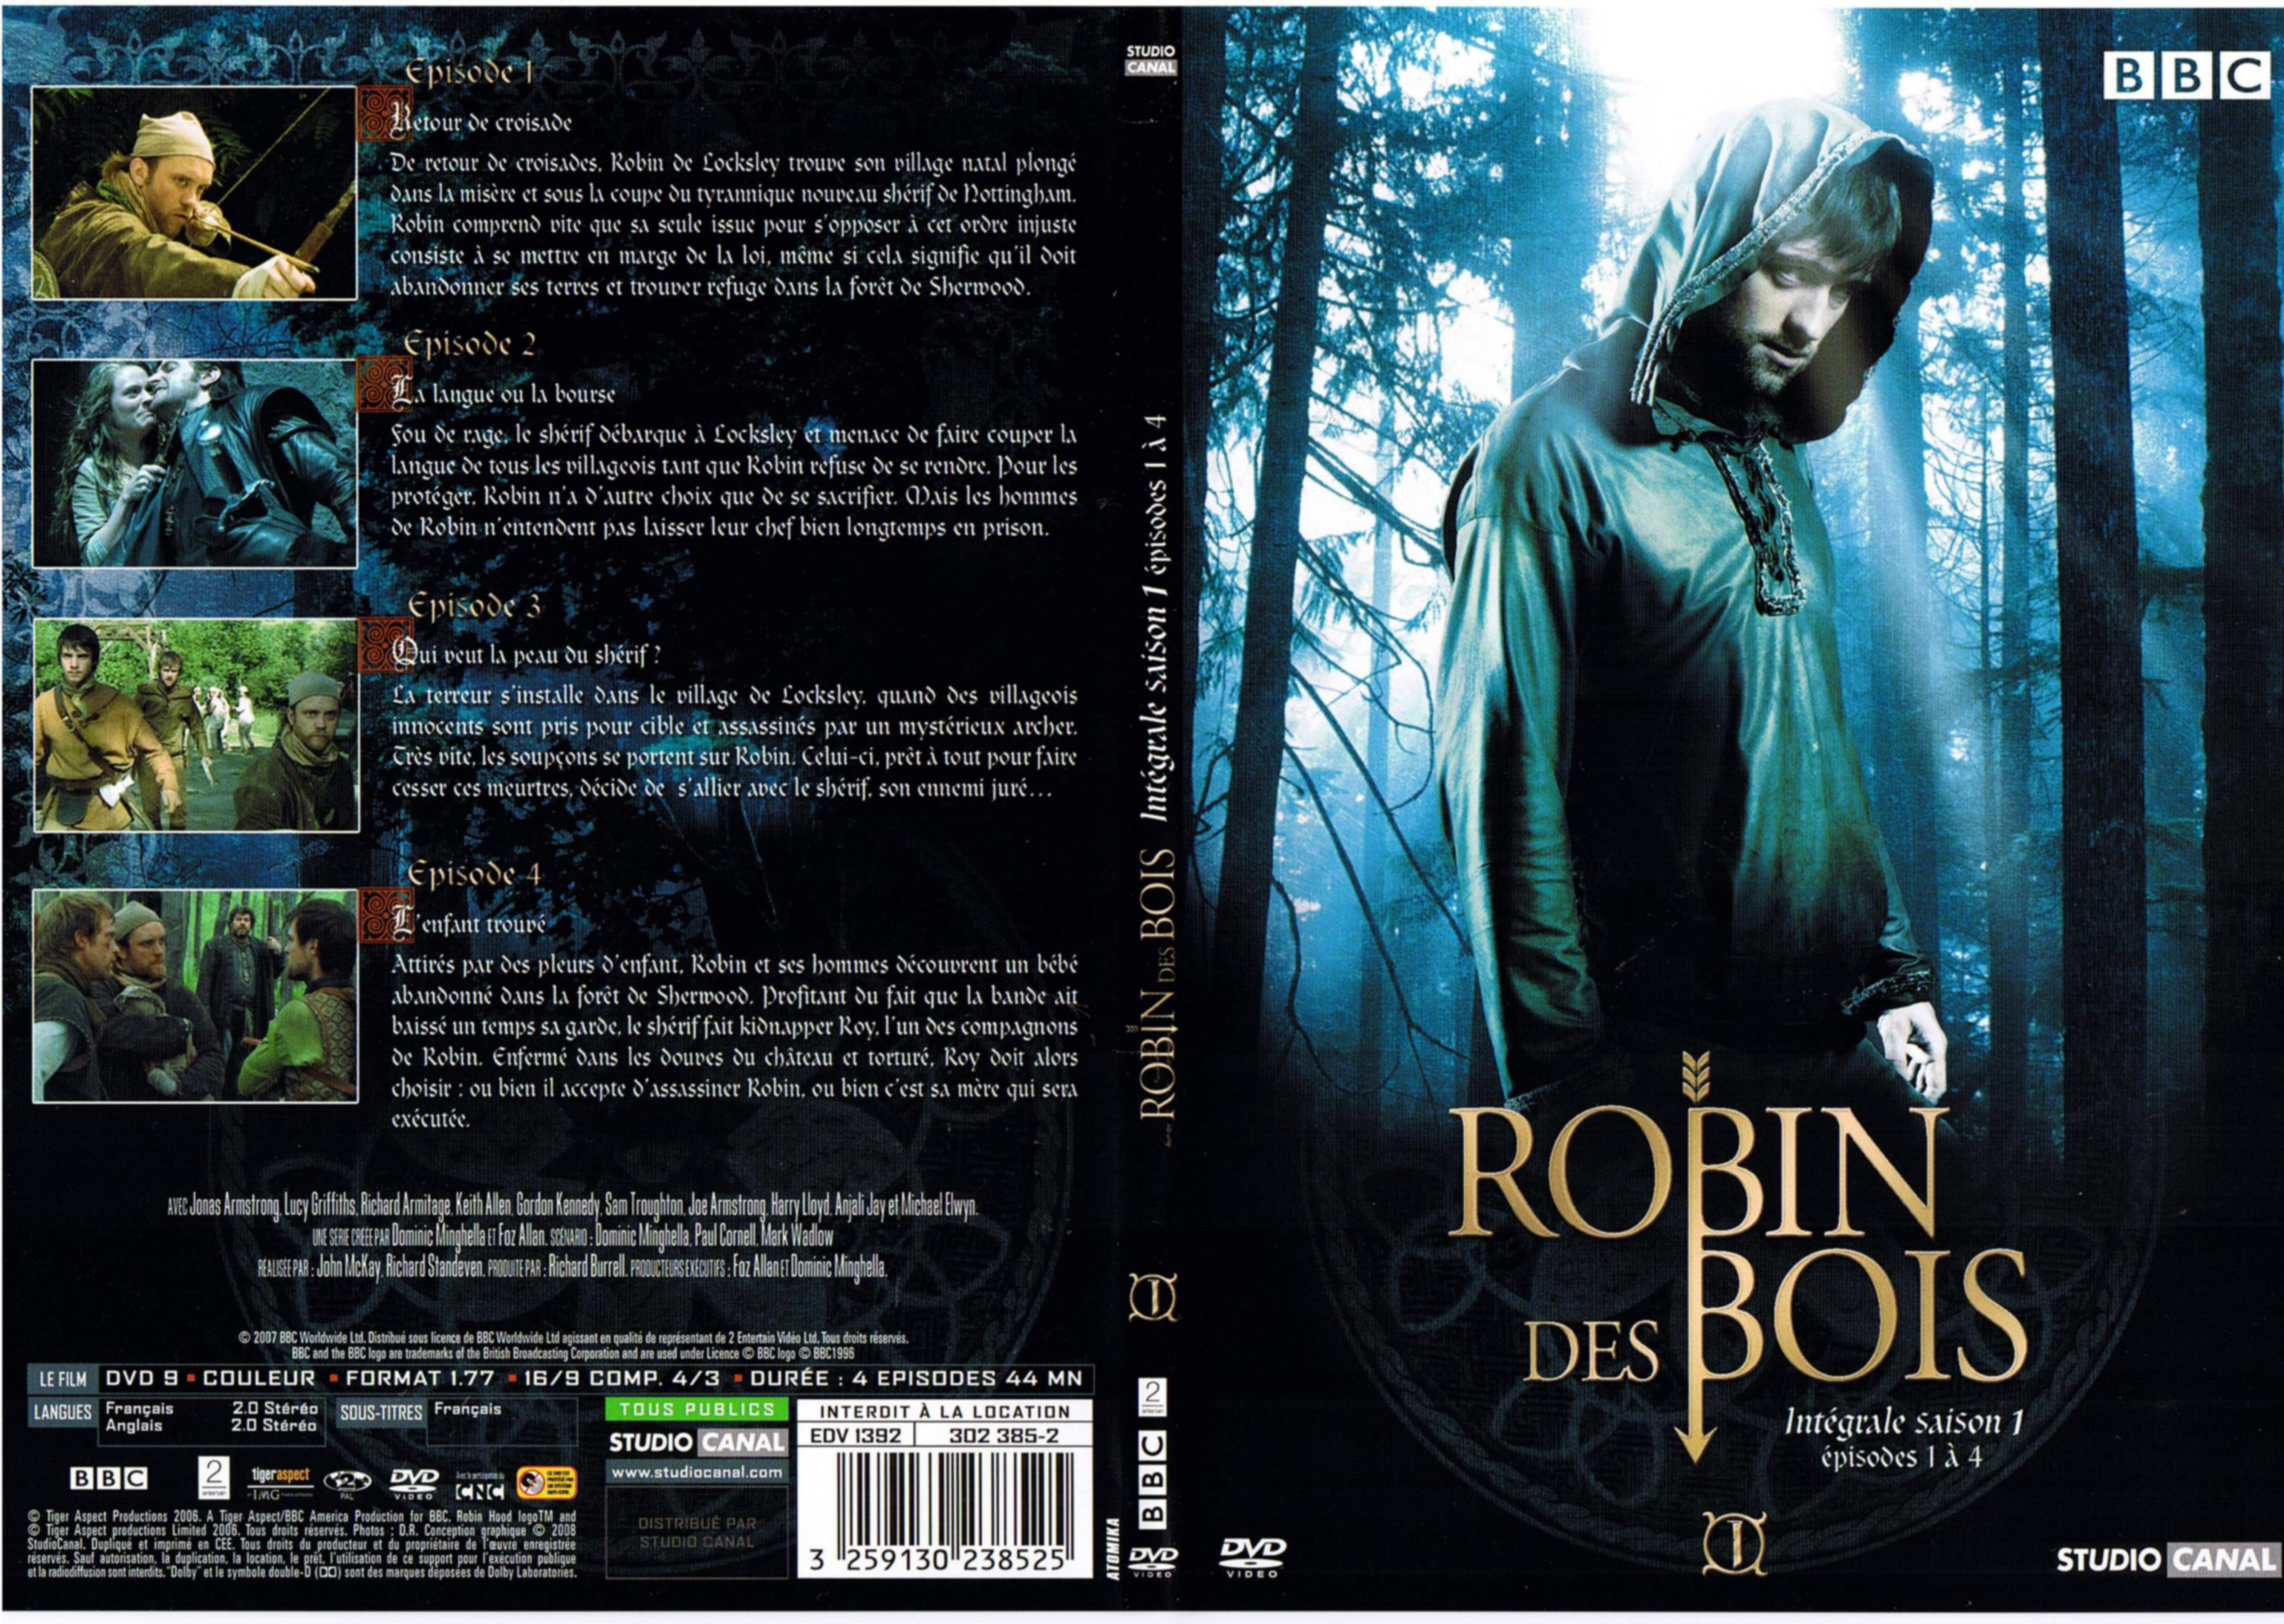 Jaquette DVD Robin des bois Saison 1 DVD 1